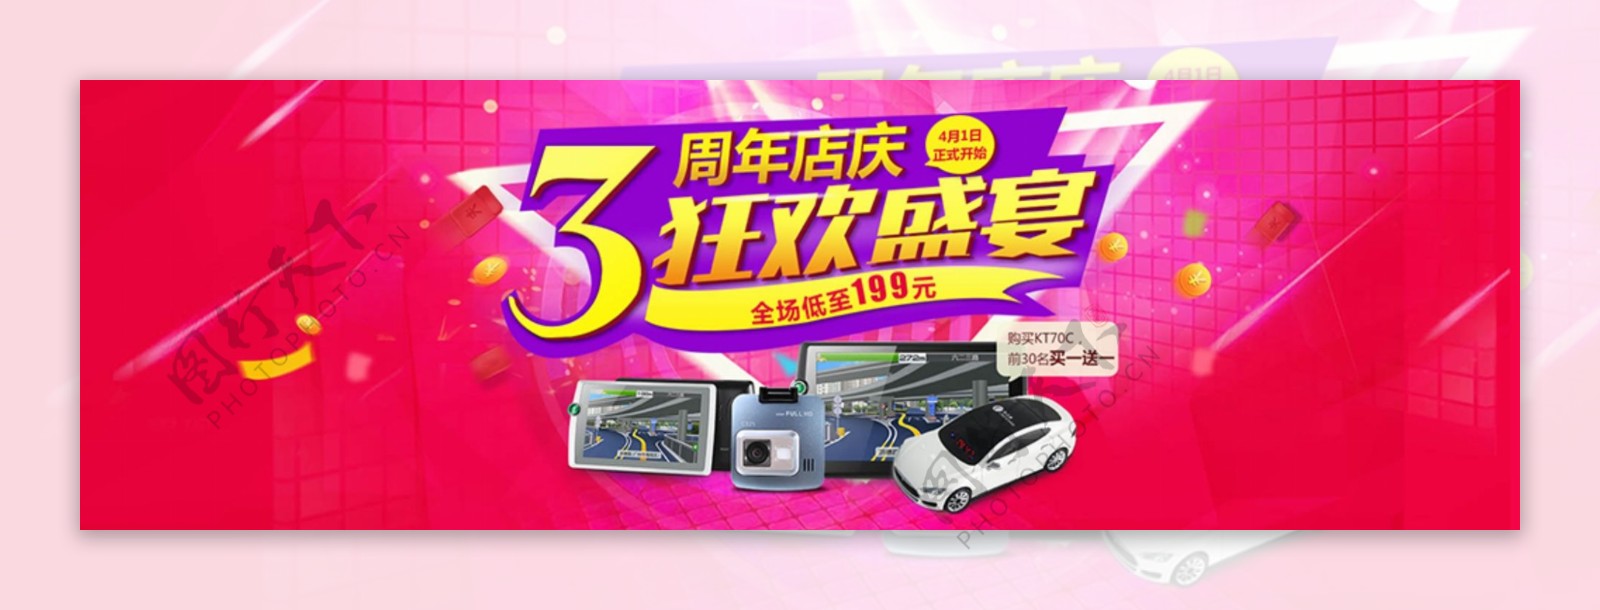 淘宝天猫汽车用品3周年店庆促销活动海报